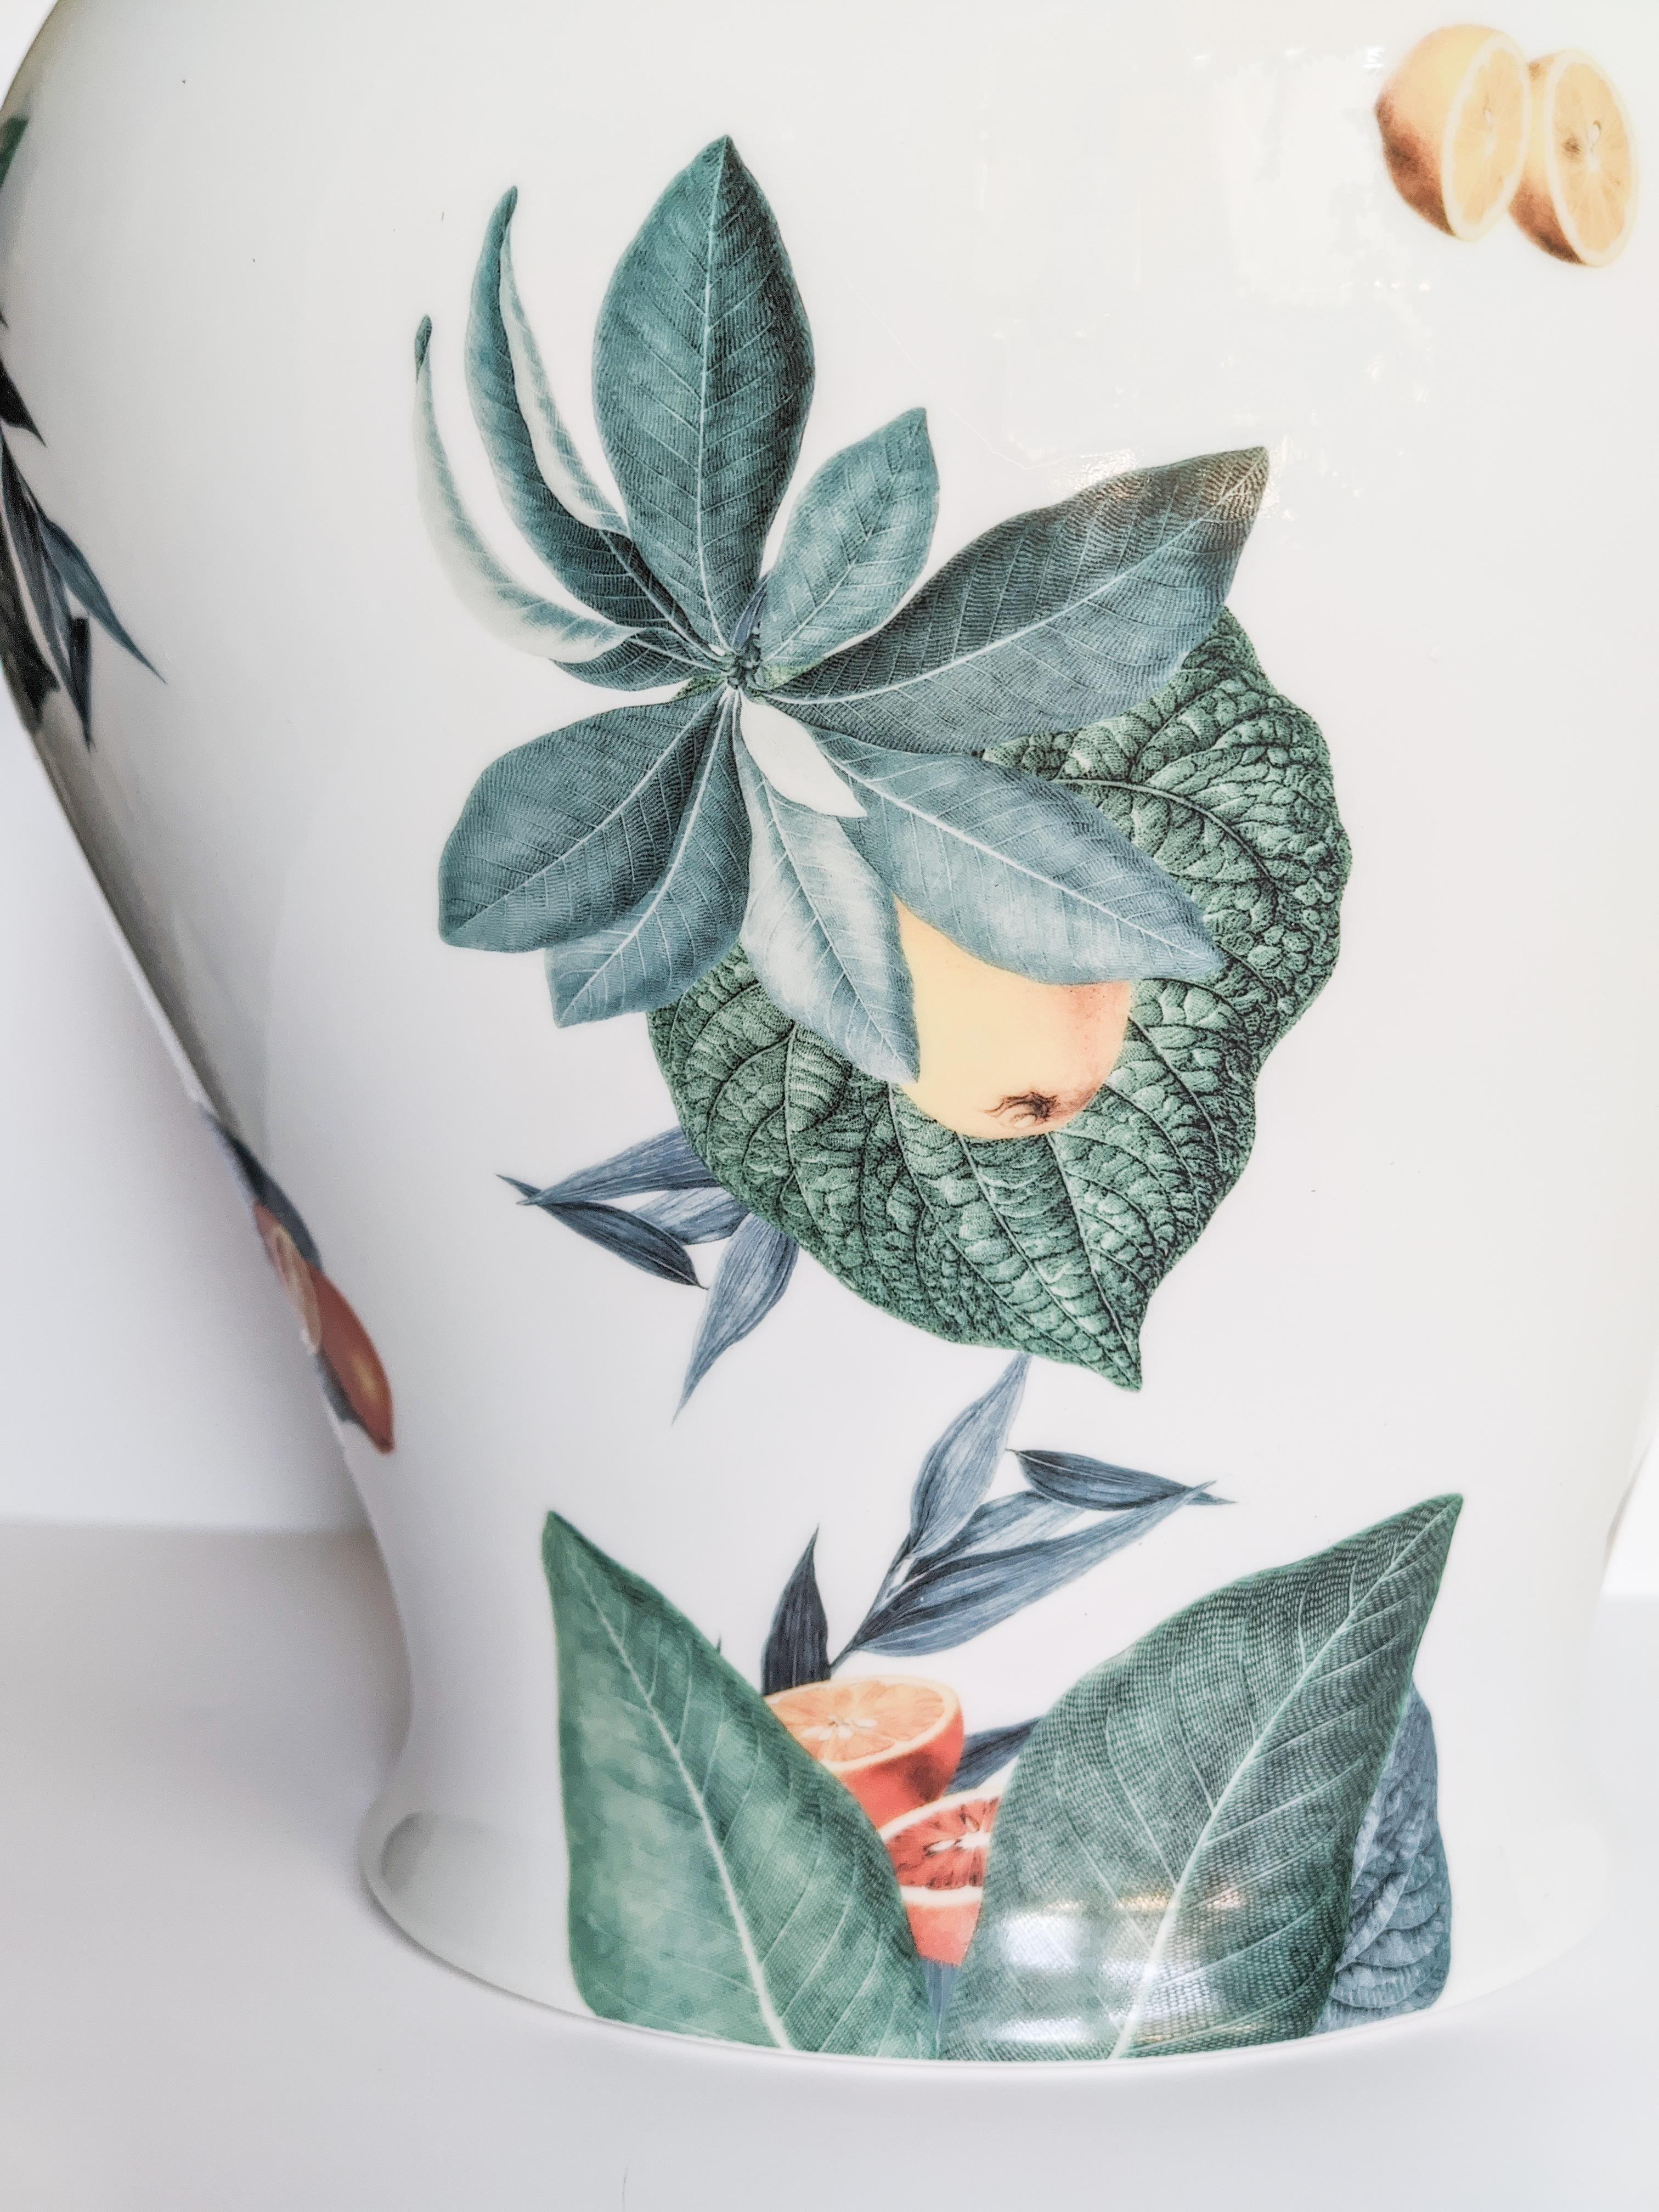 Le design classique de ce vase en porcelaine revient à la vie avec des décorations rétro à saveur contemporaine. La côte italienne d'Amalfi inspire ce motif où les feuilles et les agrumes s'assemblent et volent sur toute la surface.